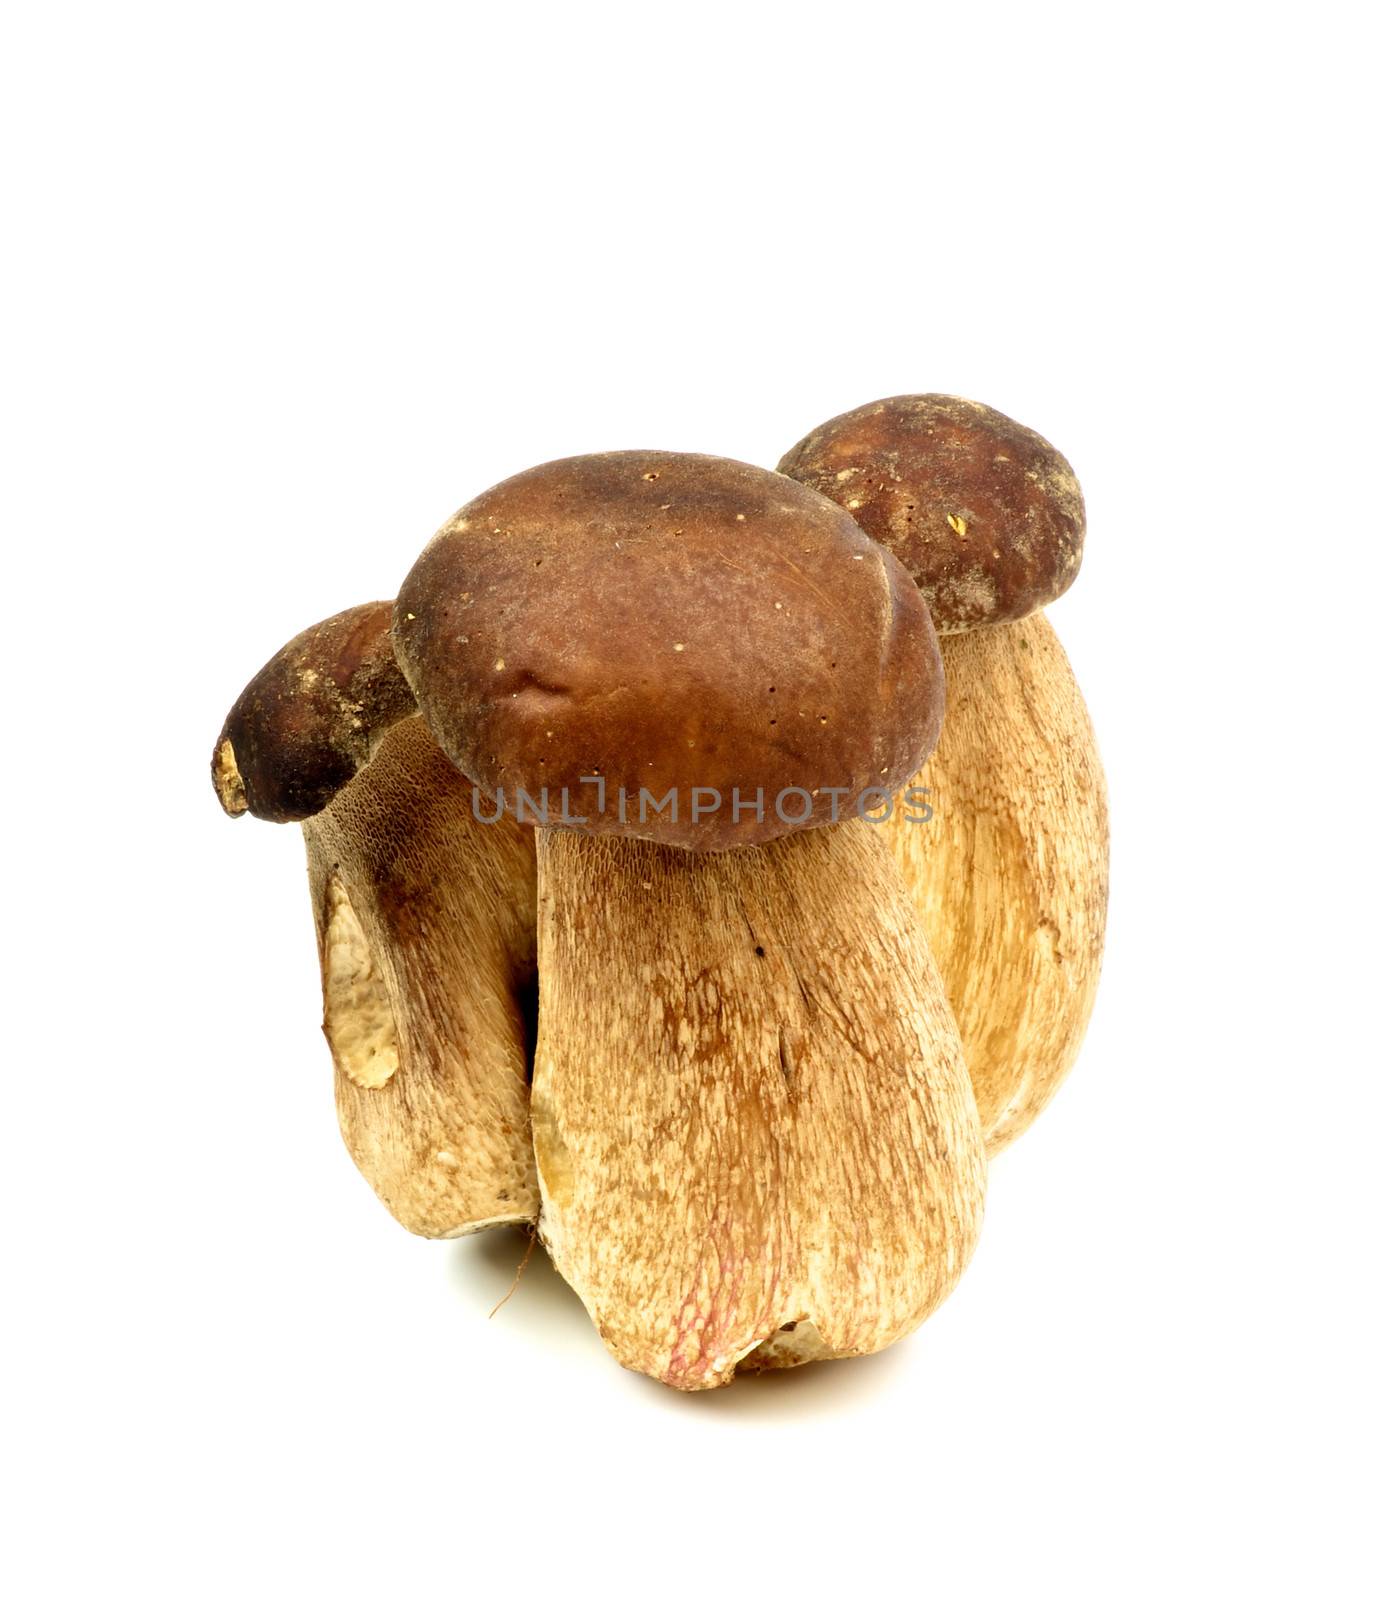 Three Porcini Mushrooms isolated on white background